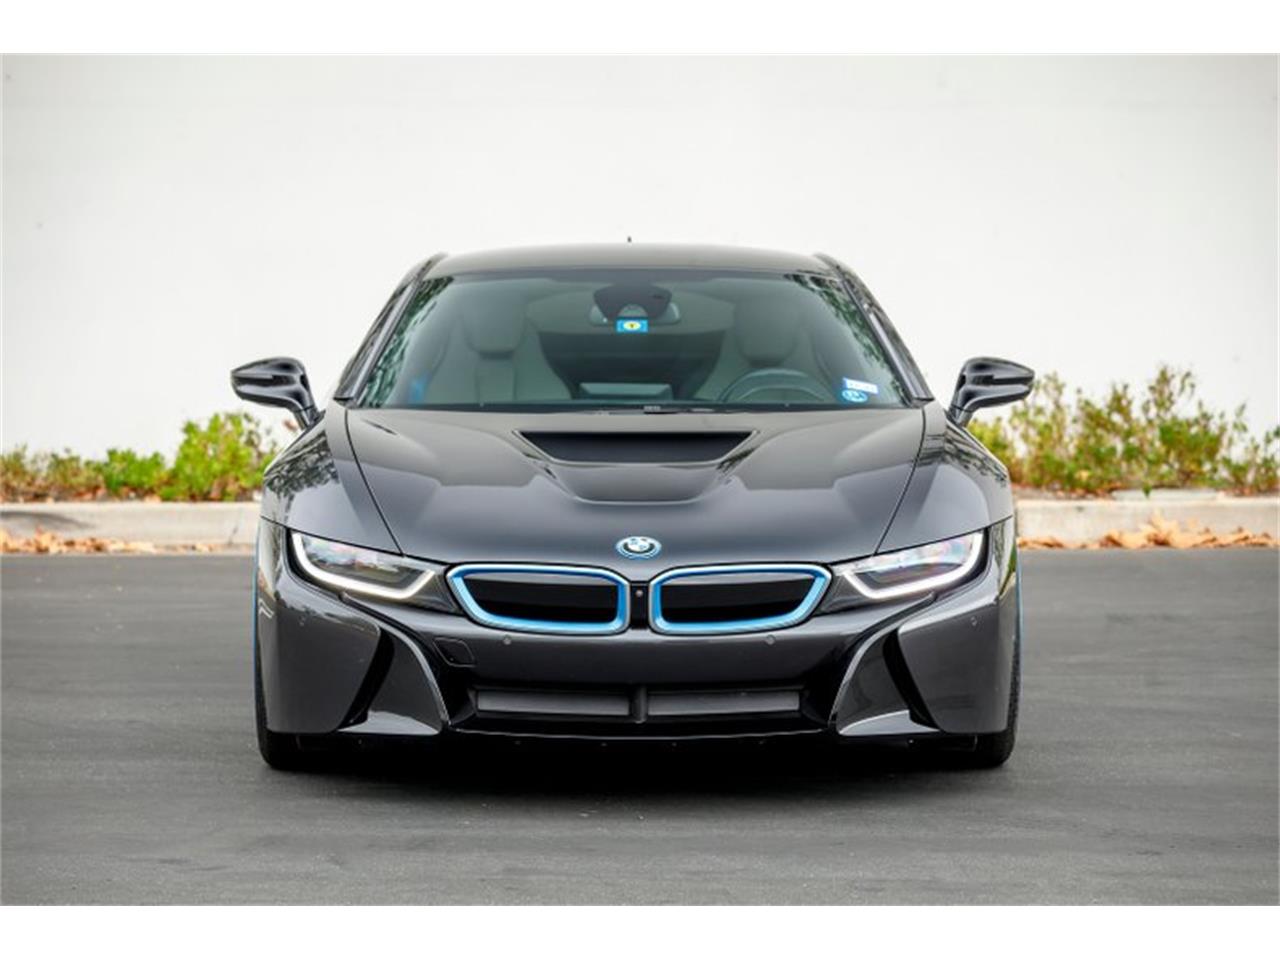 2014 BMW i8 for Sale | ClassicCars.com | CC-1173126